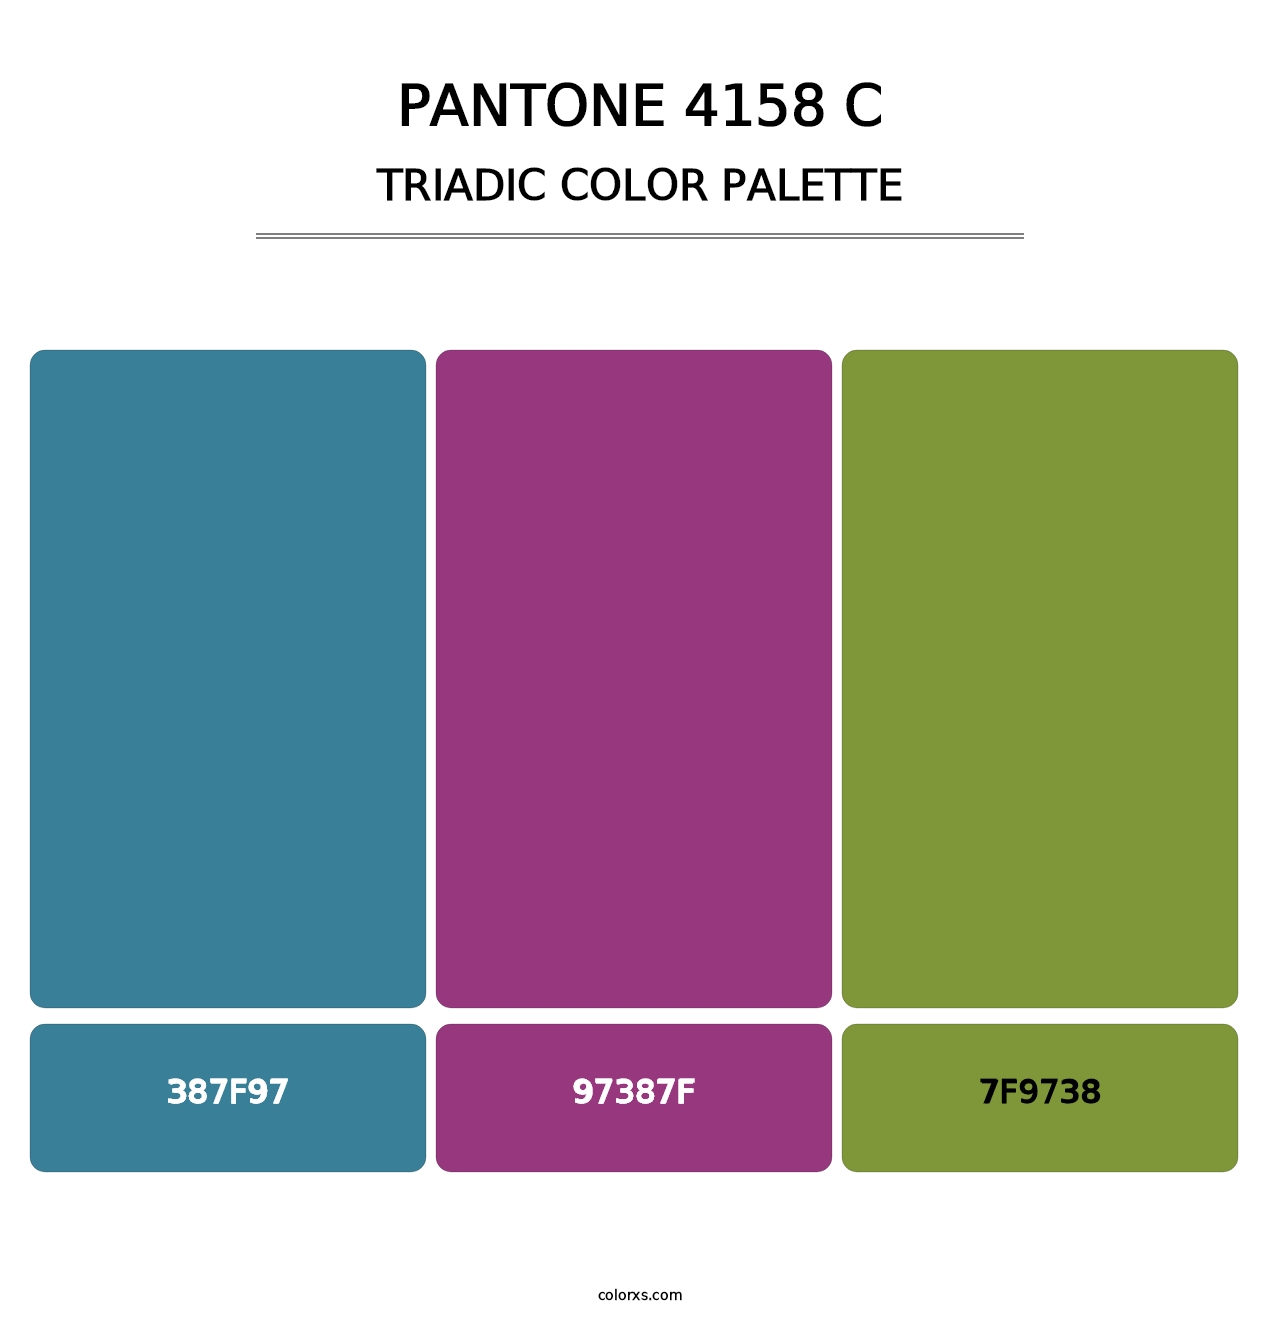 PANTONE 4158 C - Triadic Color Palette